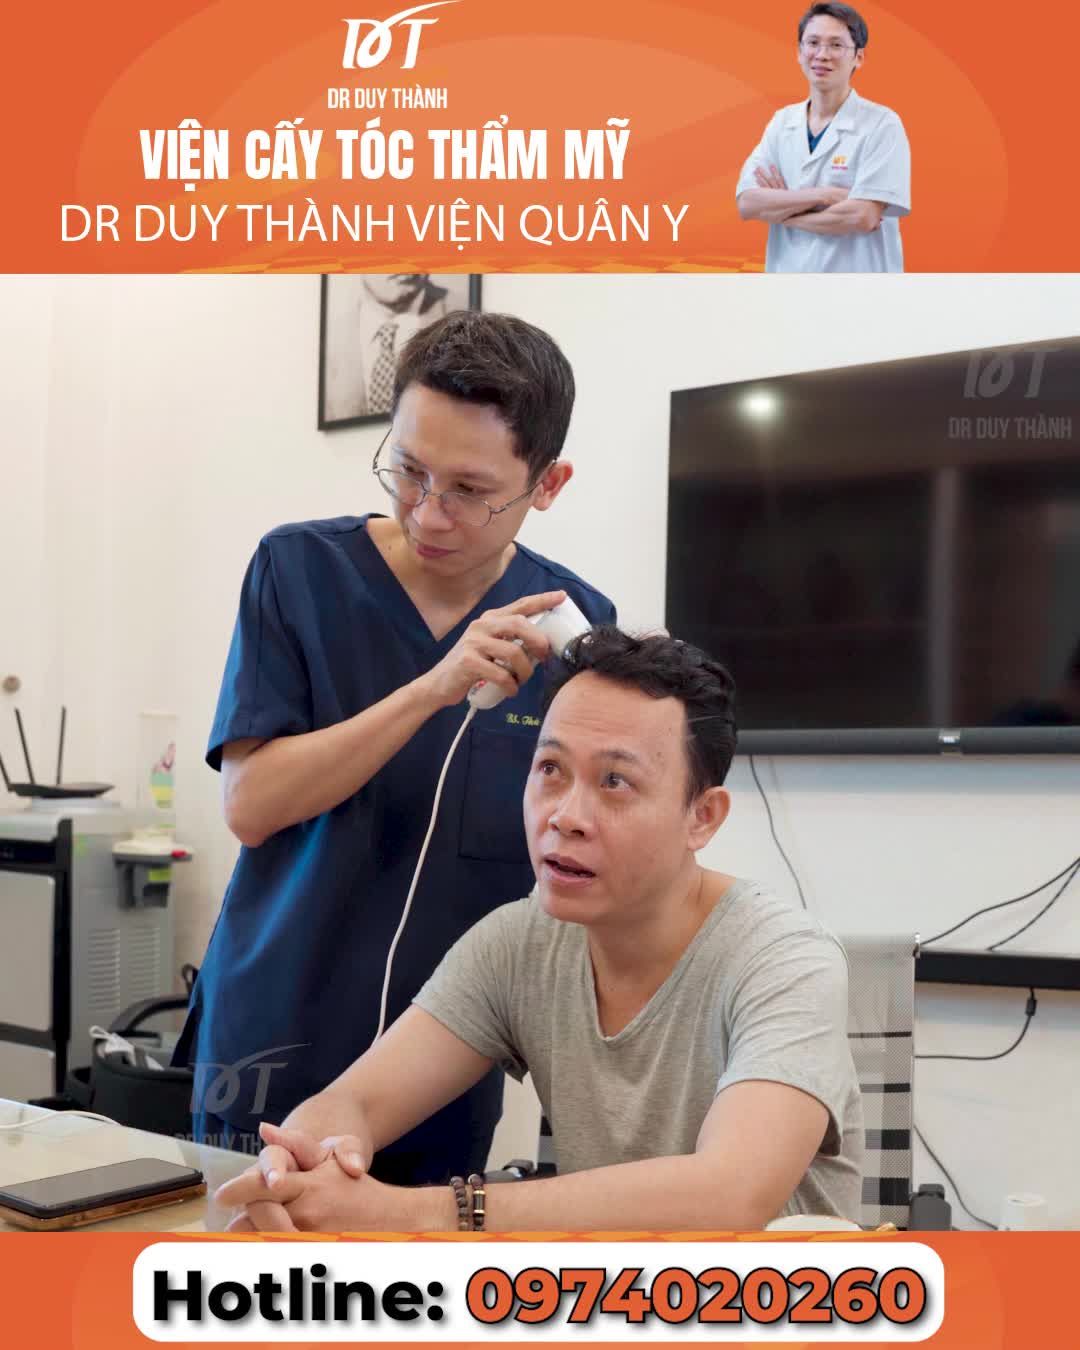 Toàn cảnh cấy tóc tại Dr Duy Thành của chuyên gia makeup Andy Phan